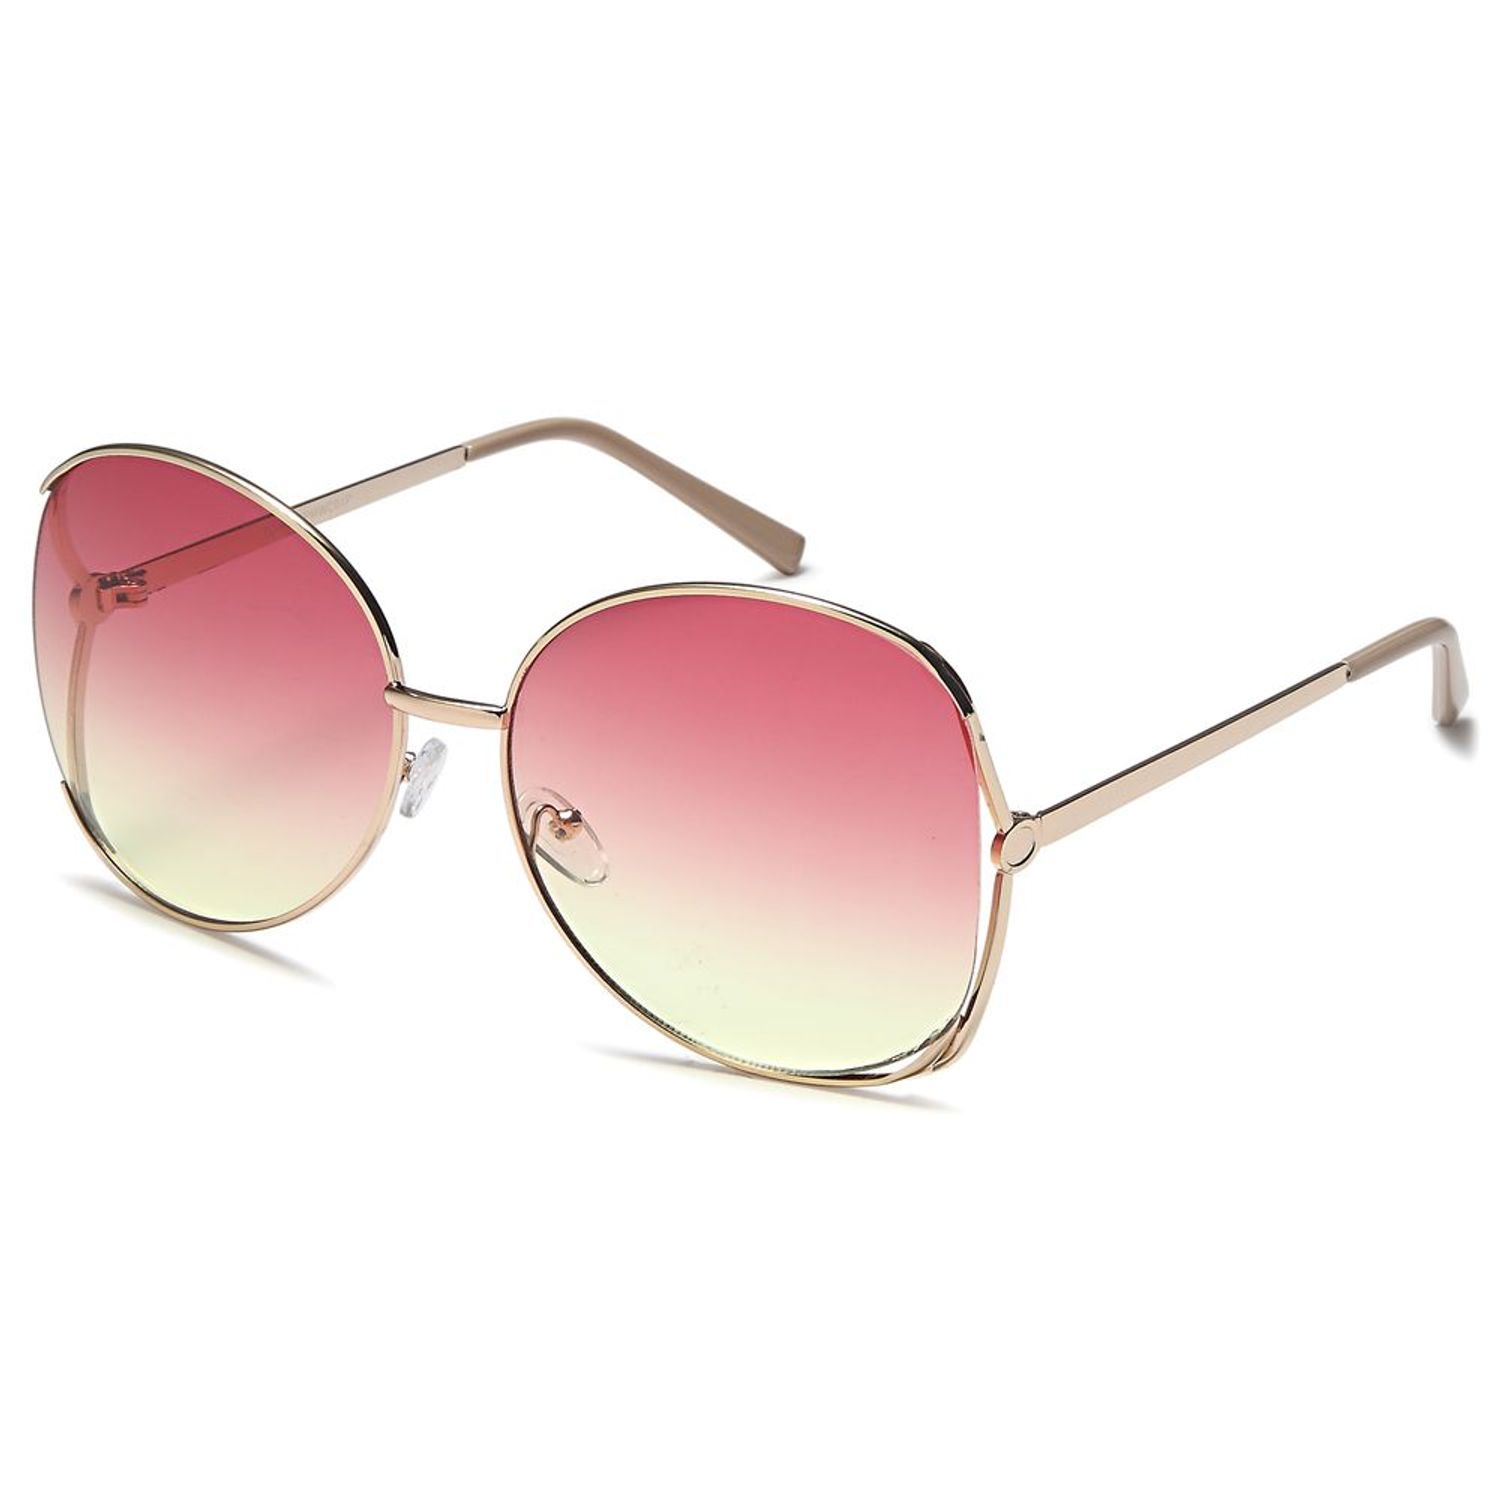 2019 nueva plaza gafas de sol mujer Marca Diseño recubrimiento espejo dama  gafas mujer lentes de sol para dama gafas de sol-in G